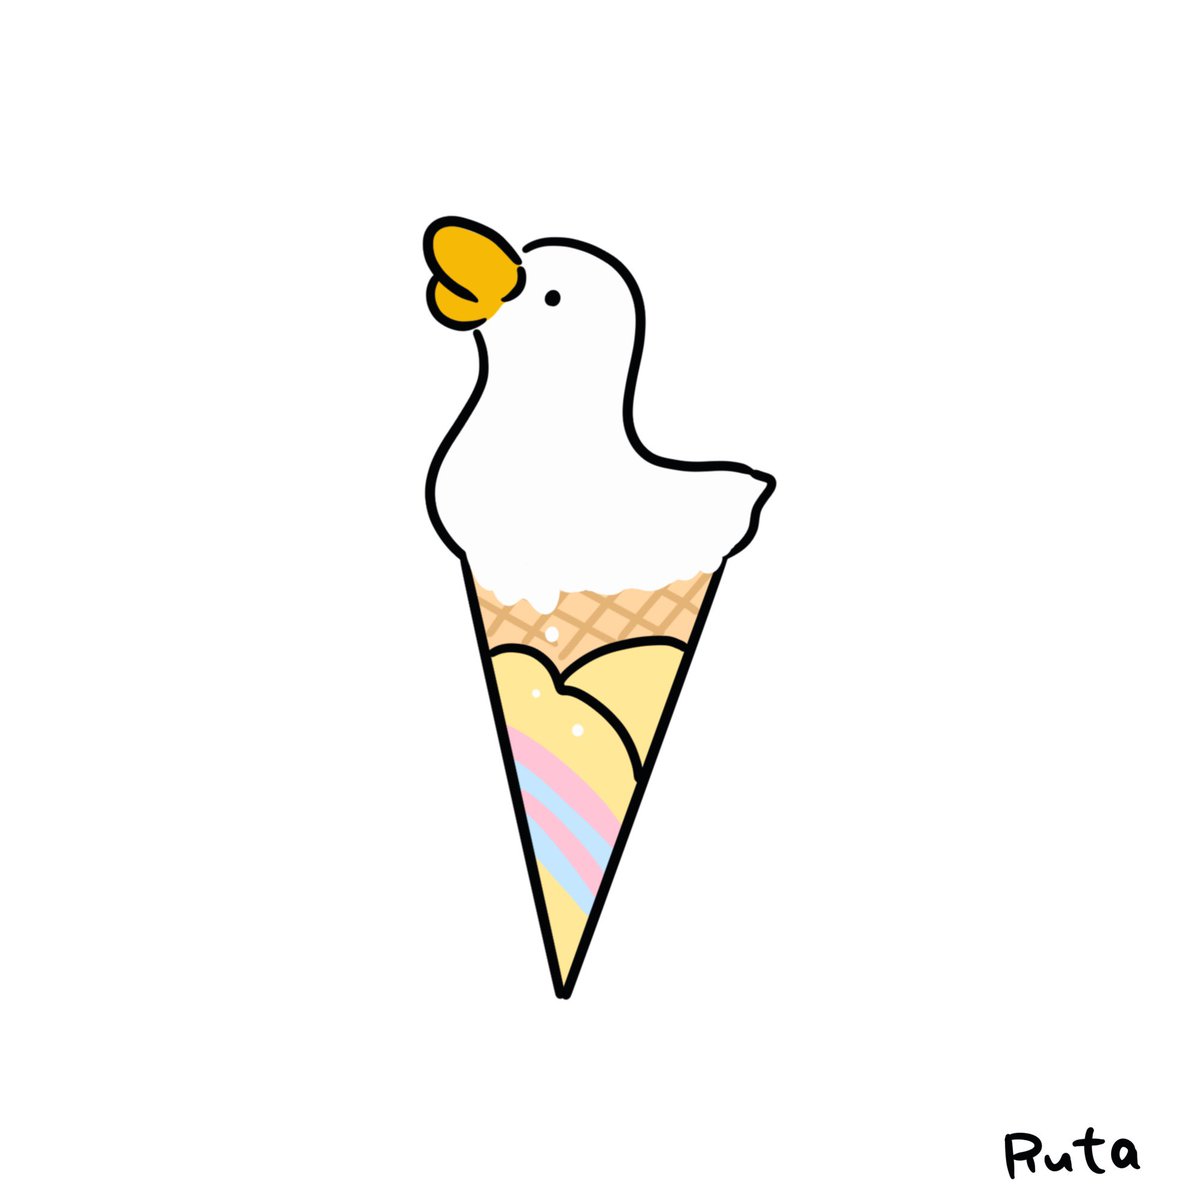 暑い日にはガーガーソフト

#イラスト #illustration #mydrawing #イラストレーター #絵描きさんと繋がりたい #ゆる絵 #シュールなイラスト #アヒル #アヒルのイラスト #duck #ソフトクリーム #食べるのかわいそう